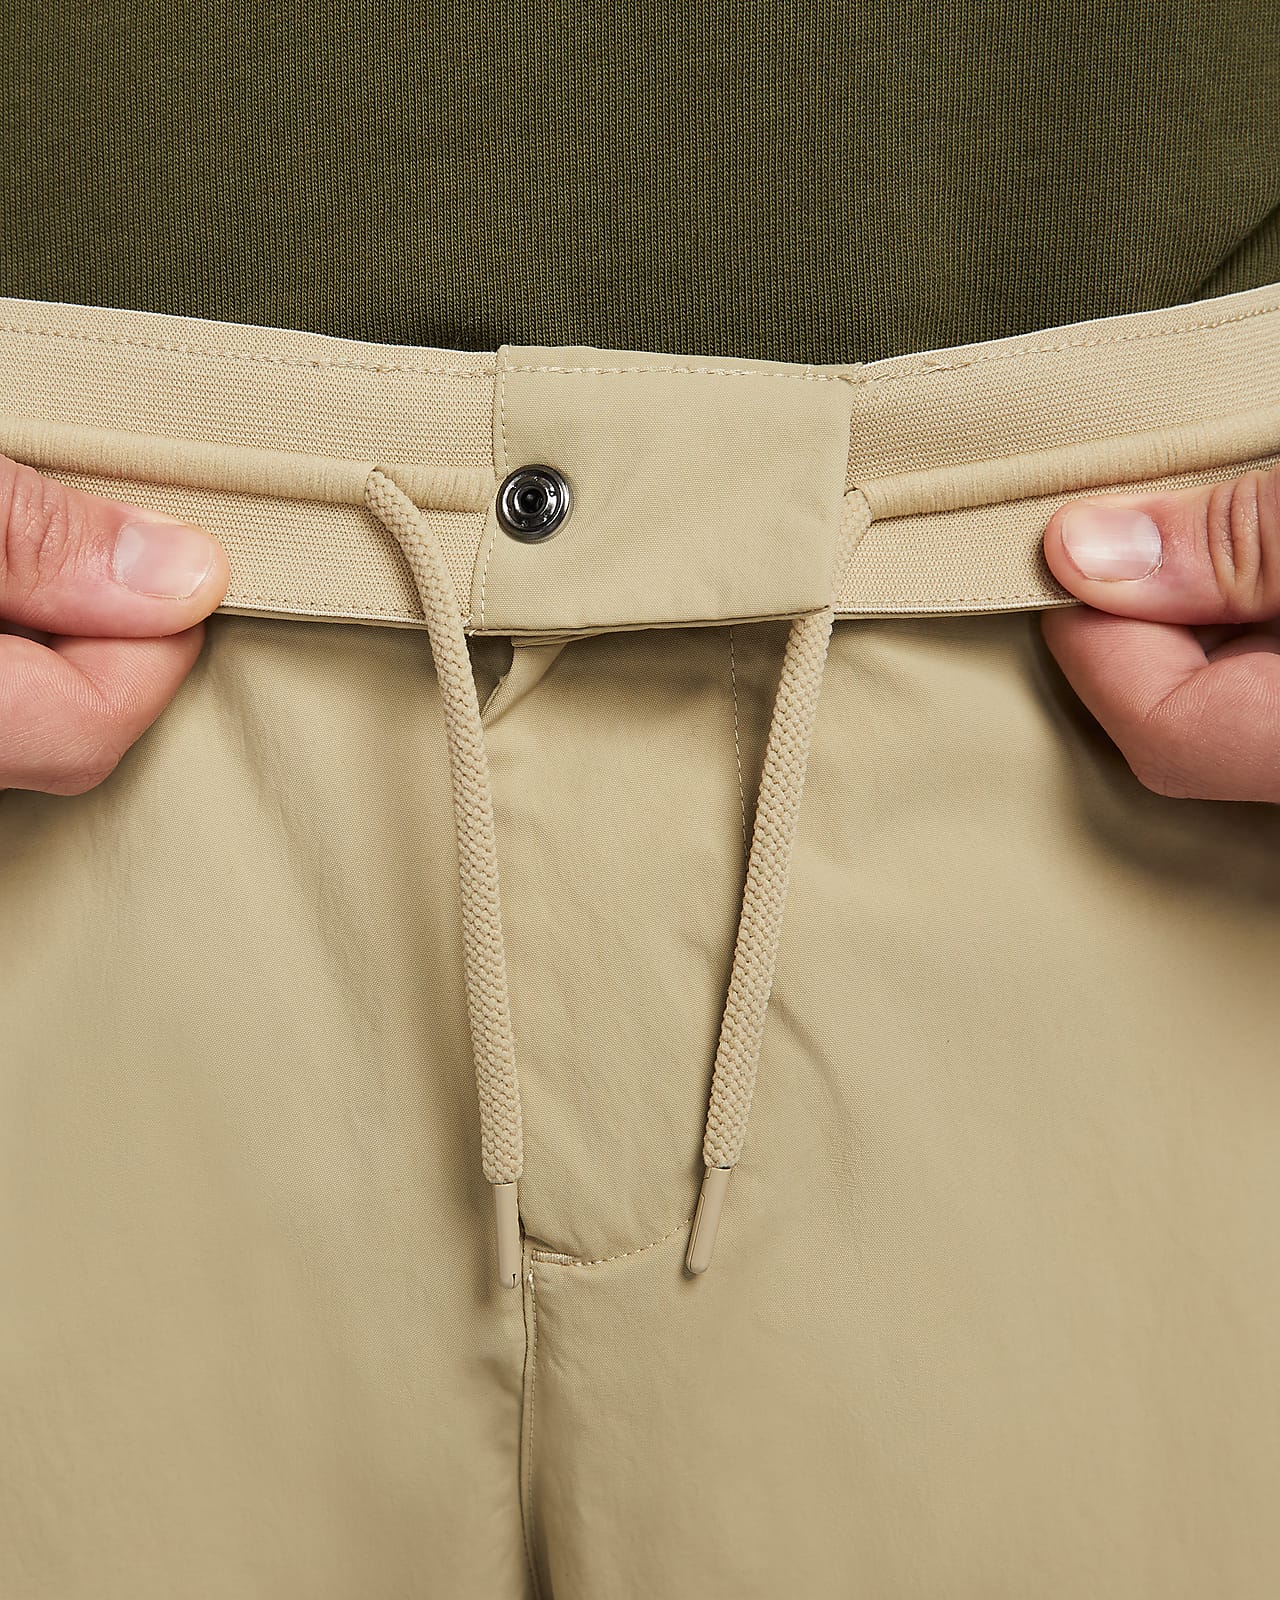 Nike Sportswear Style Essentials Men's Utility Pants.